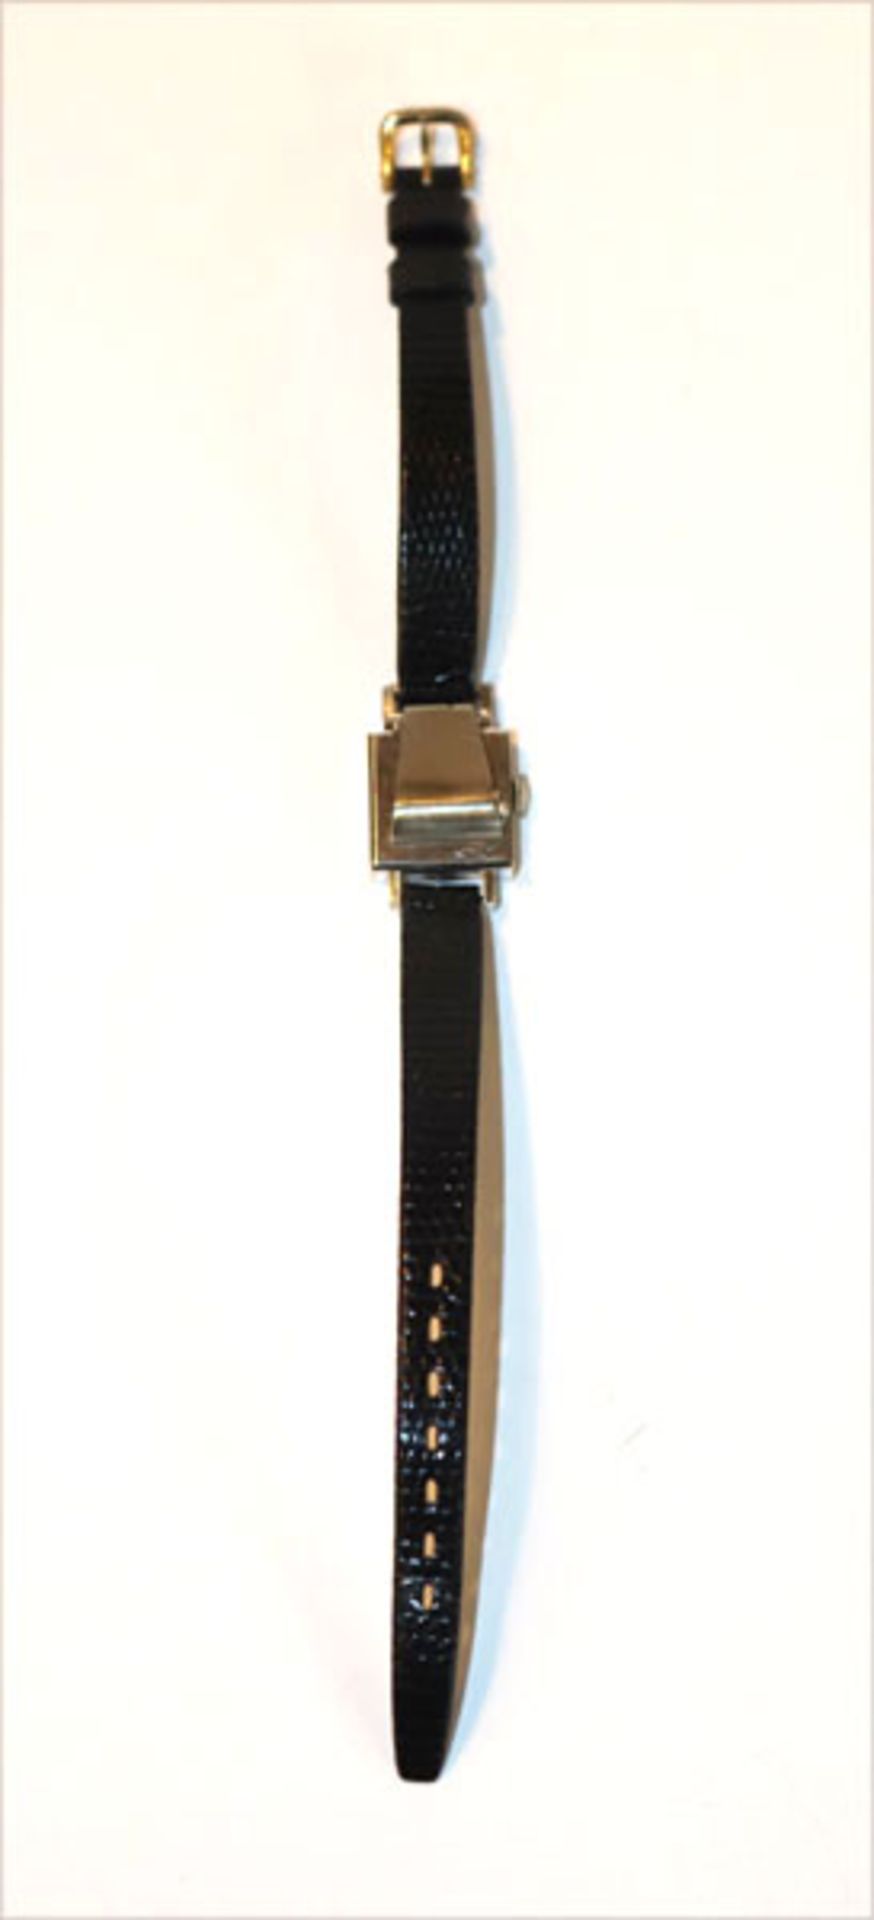 LeCoultre Damen Armbanduhr, 14 k Weißgoldgehäuse in eckiger Form mit aufklappbaren Deckel,